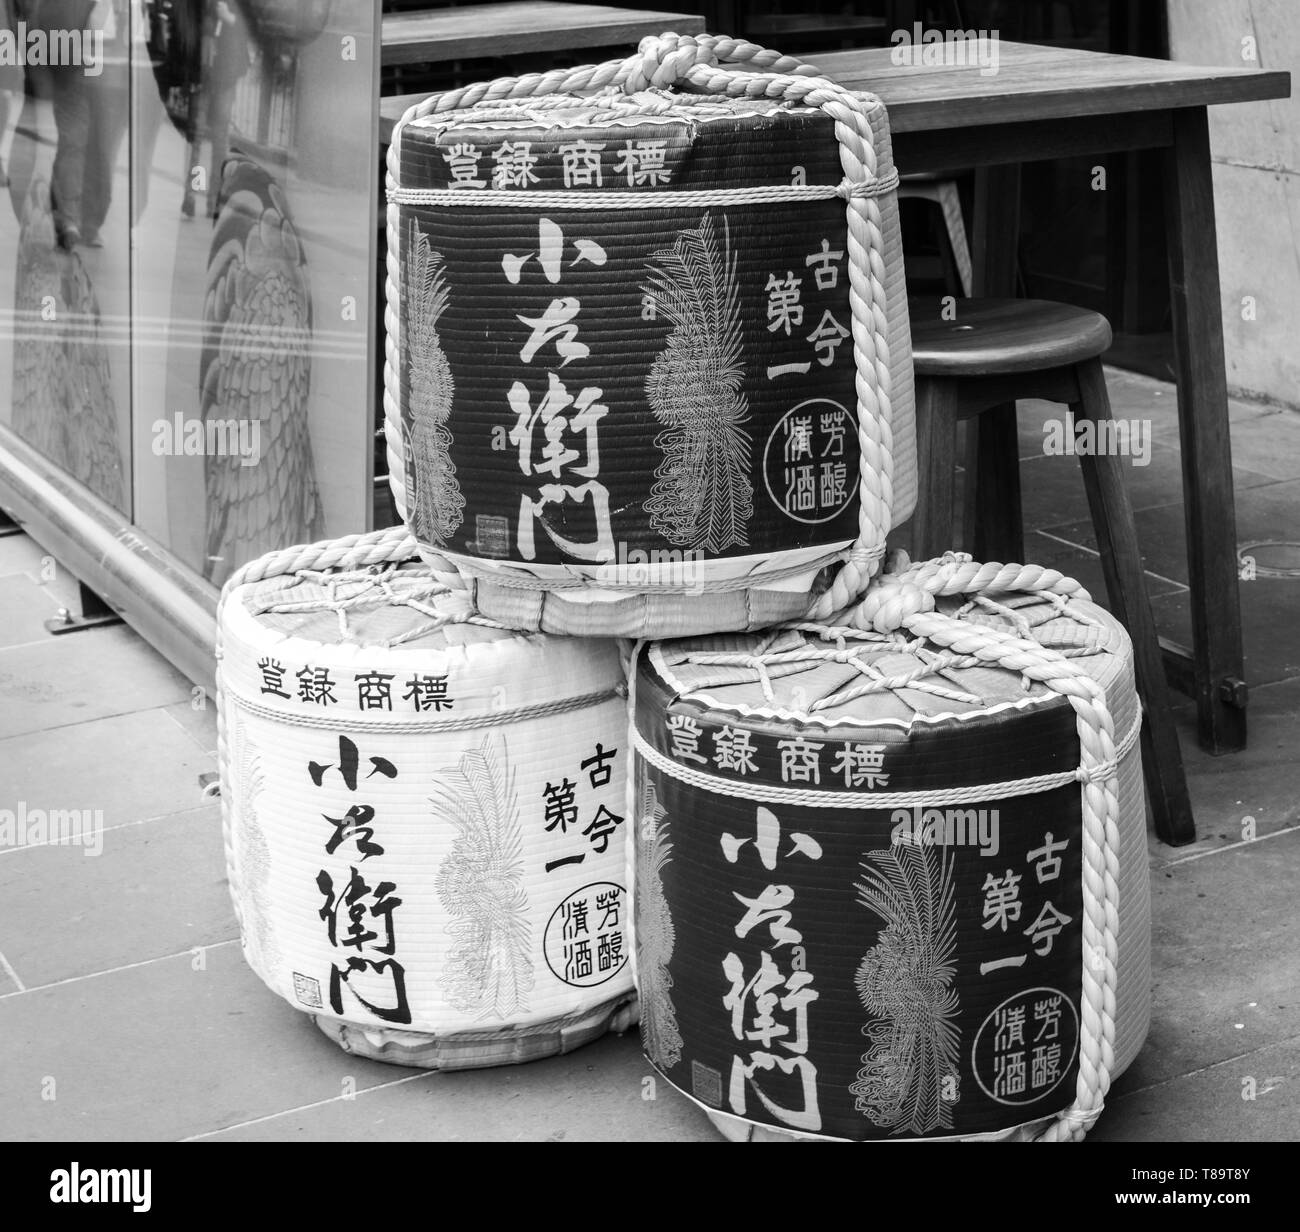 Fûts de saké japonais - stockage traditionnel ornemental d'alcool Banque D'Images